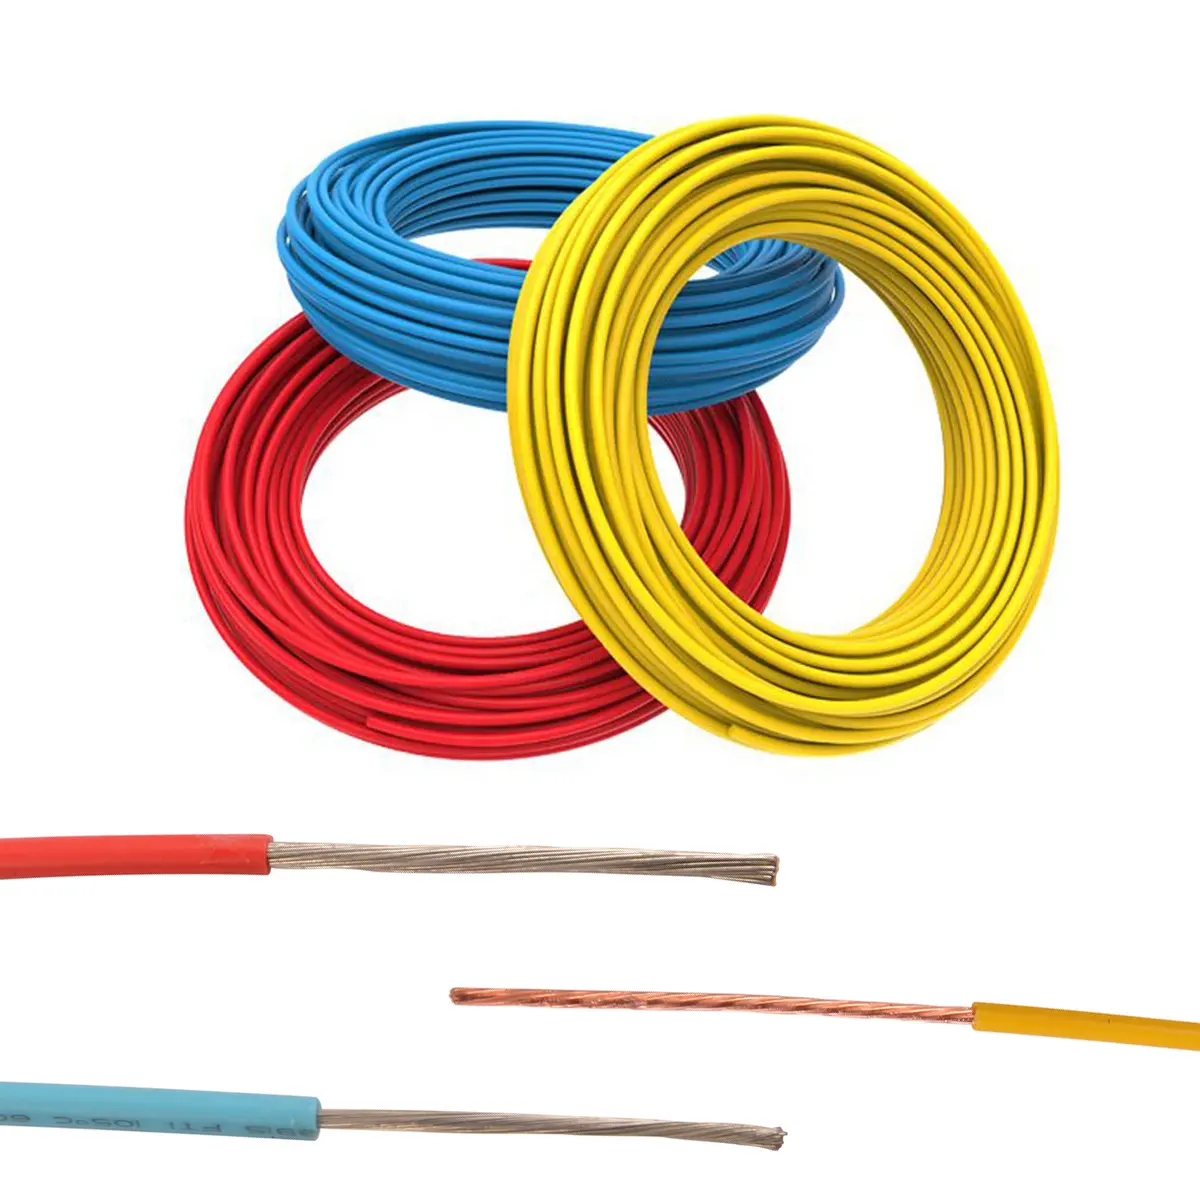 Высокое качество, сертификация UL, Полиэтиленовая изоляция, дешевый китайский кабель, электрический провод в рулоне для внутренней проводки приборов